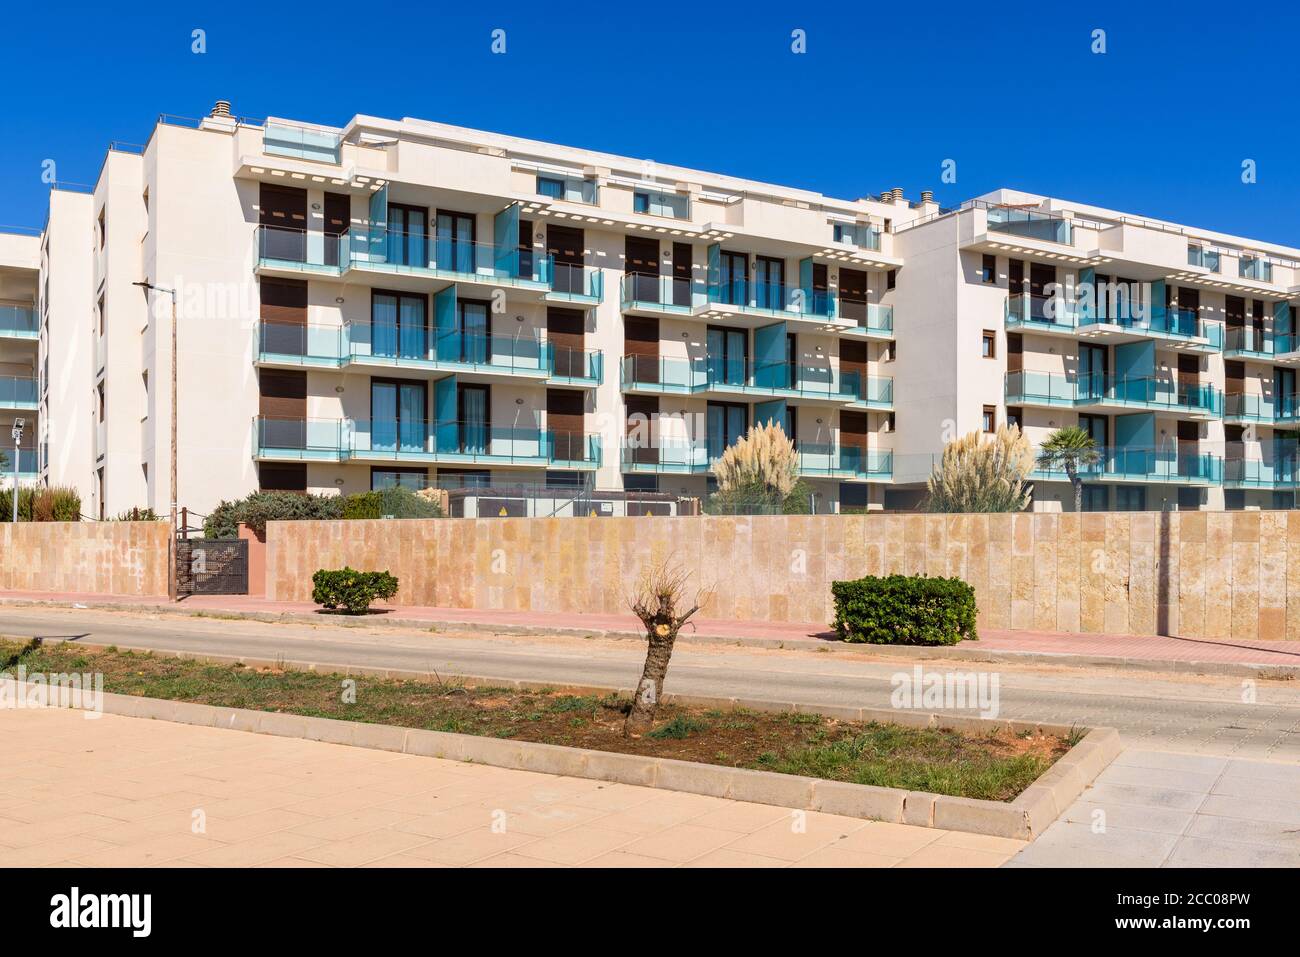 Arquitectura tradicional española, hoteles modernos en el paseo marítimo de Ciutadella en la isla de Menorca. España Foto de stock